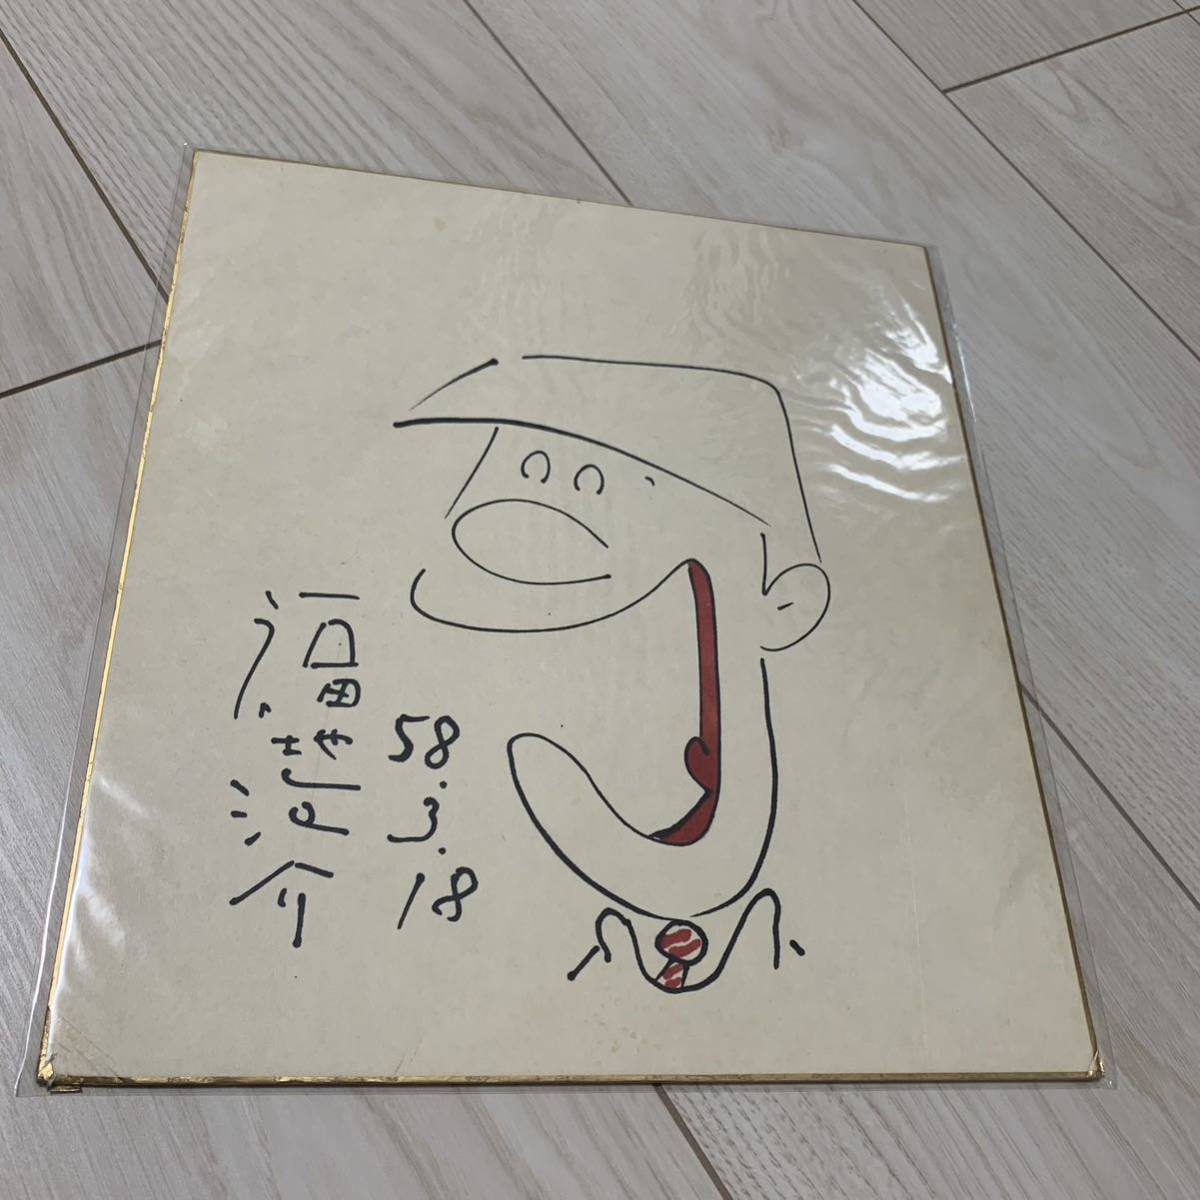 Awasuke Fukuchi Autogrammillustration auf farbigem Papier, Comics, Anime-Waren, Zeichen, Handgezeichnetes Gemälde